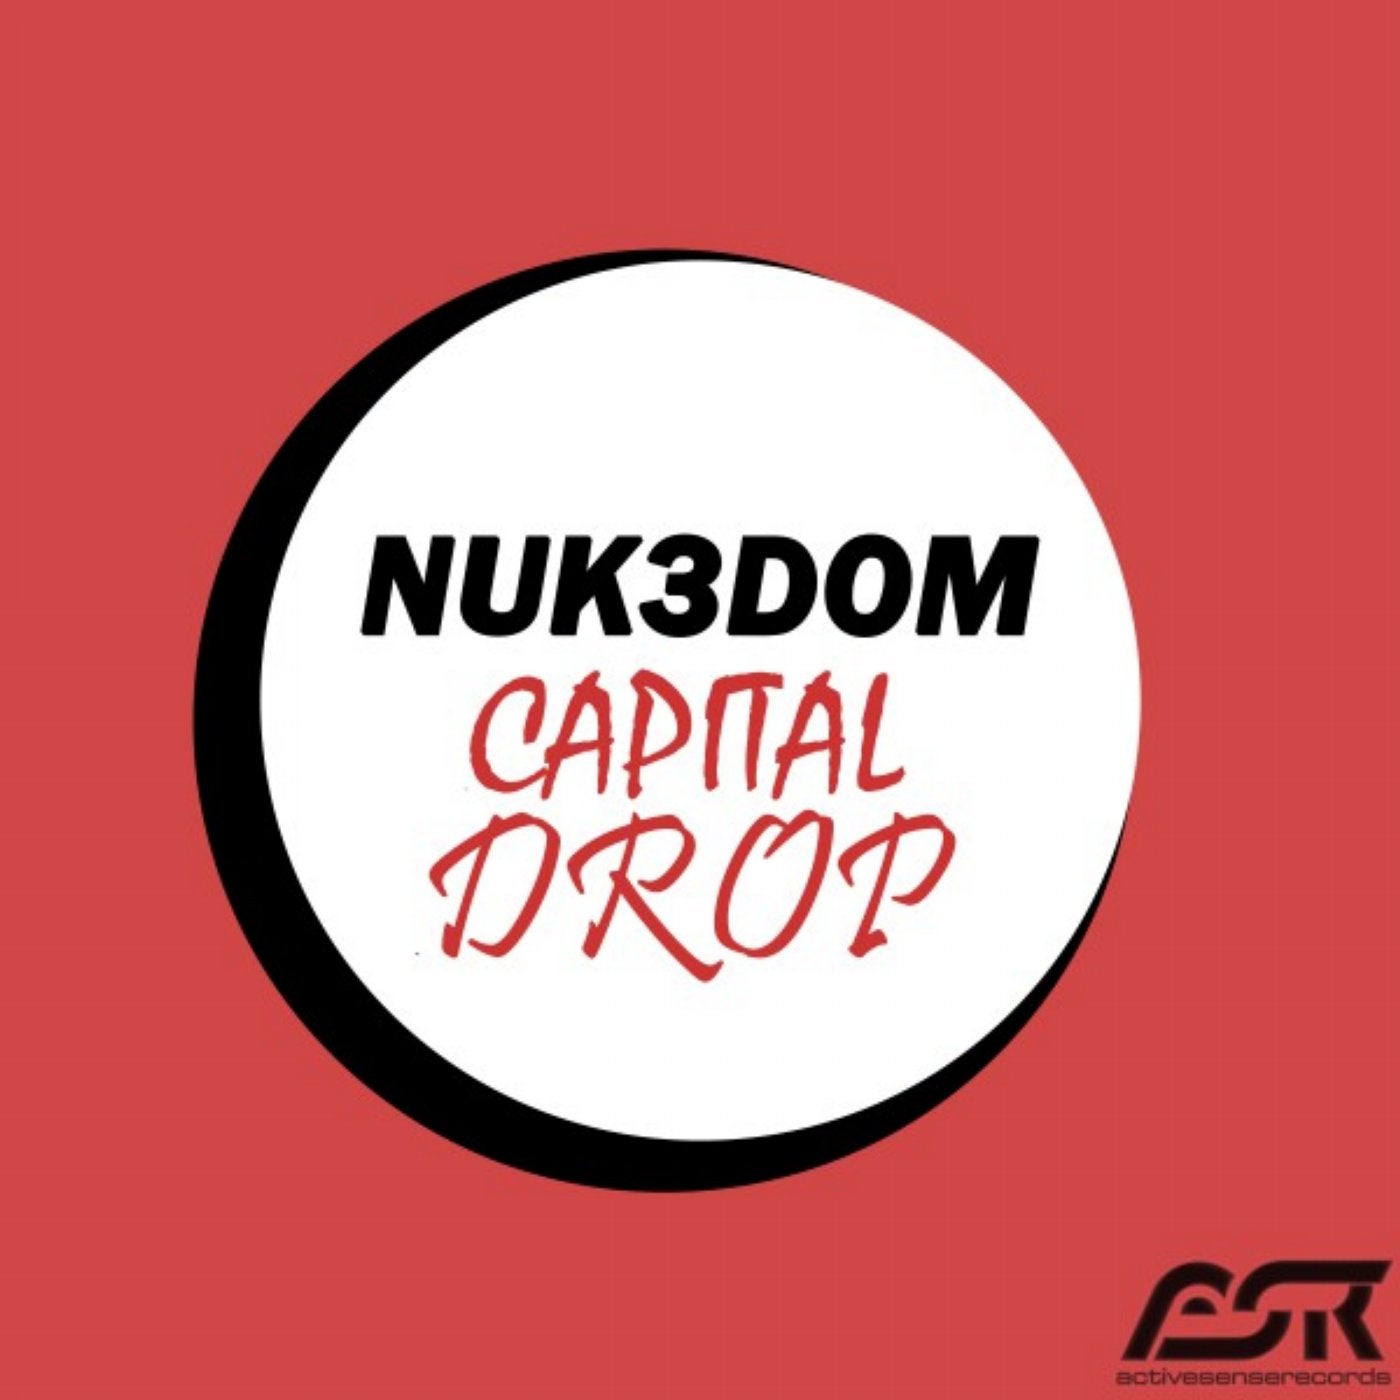 Capital Drop